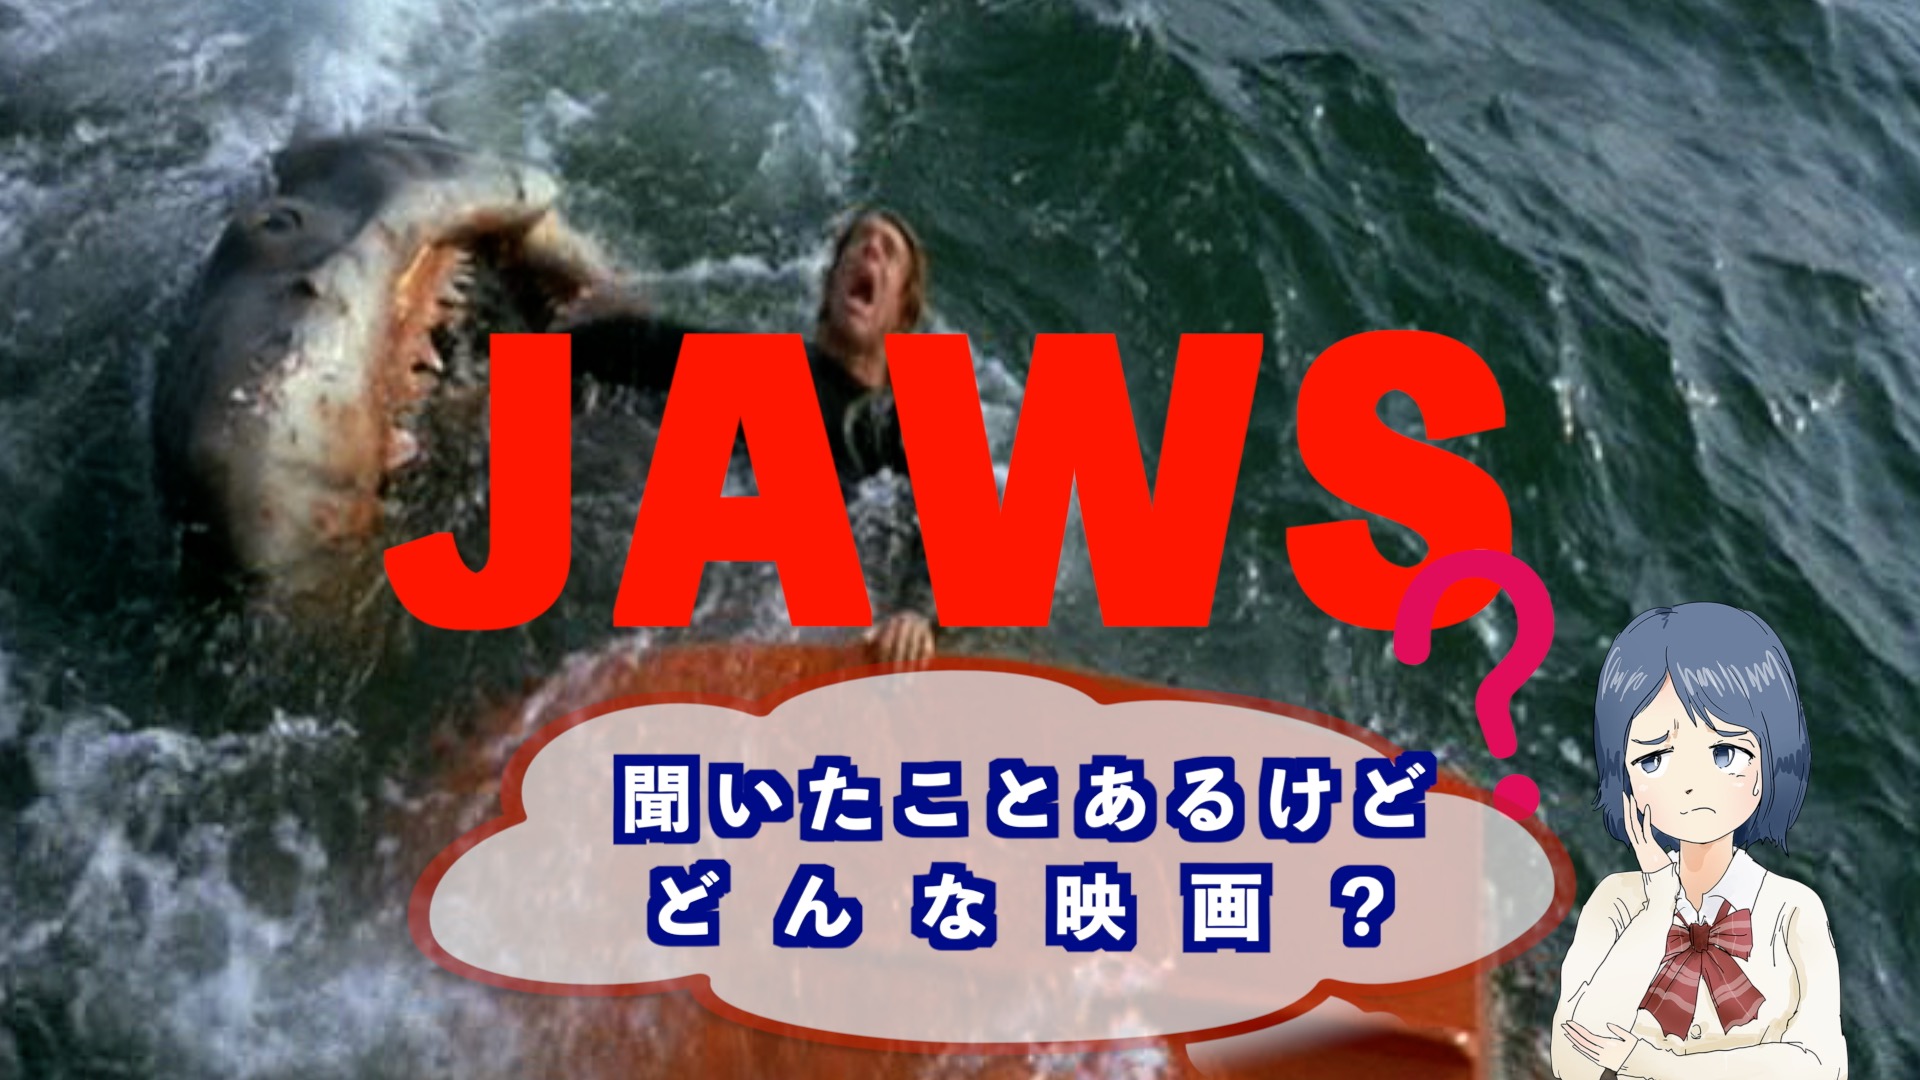 映画『JAWS』のアイキャッチ画像